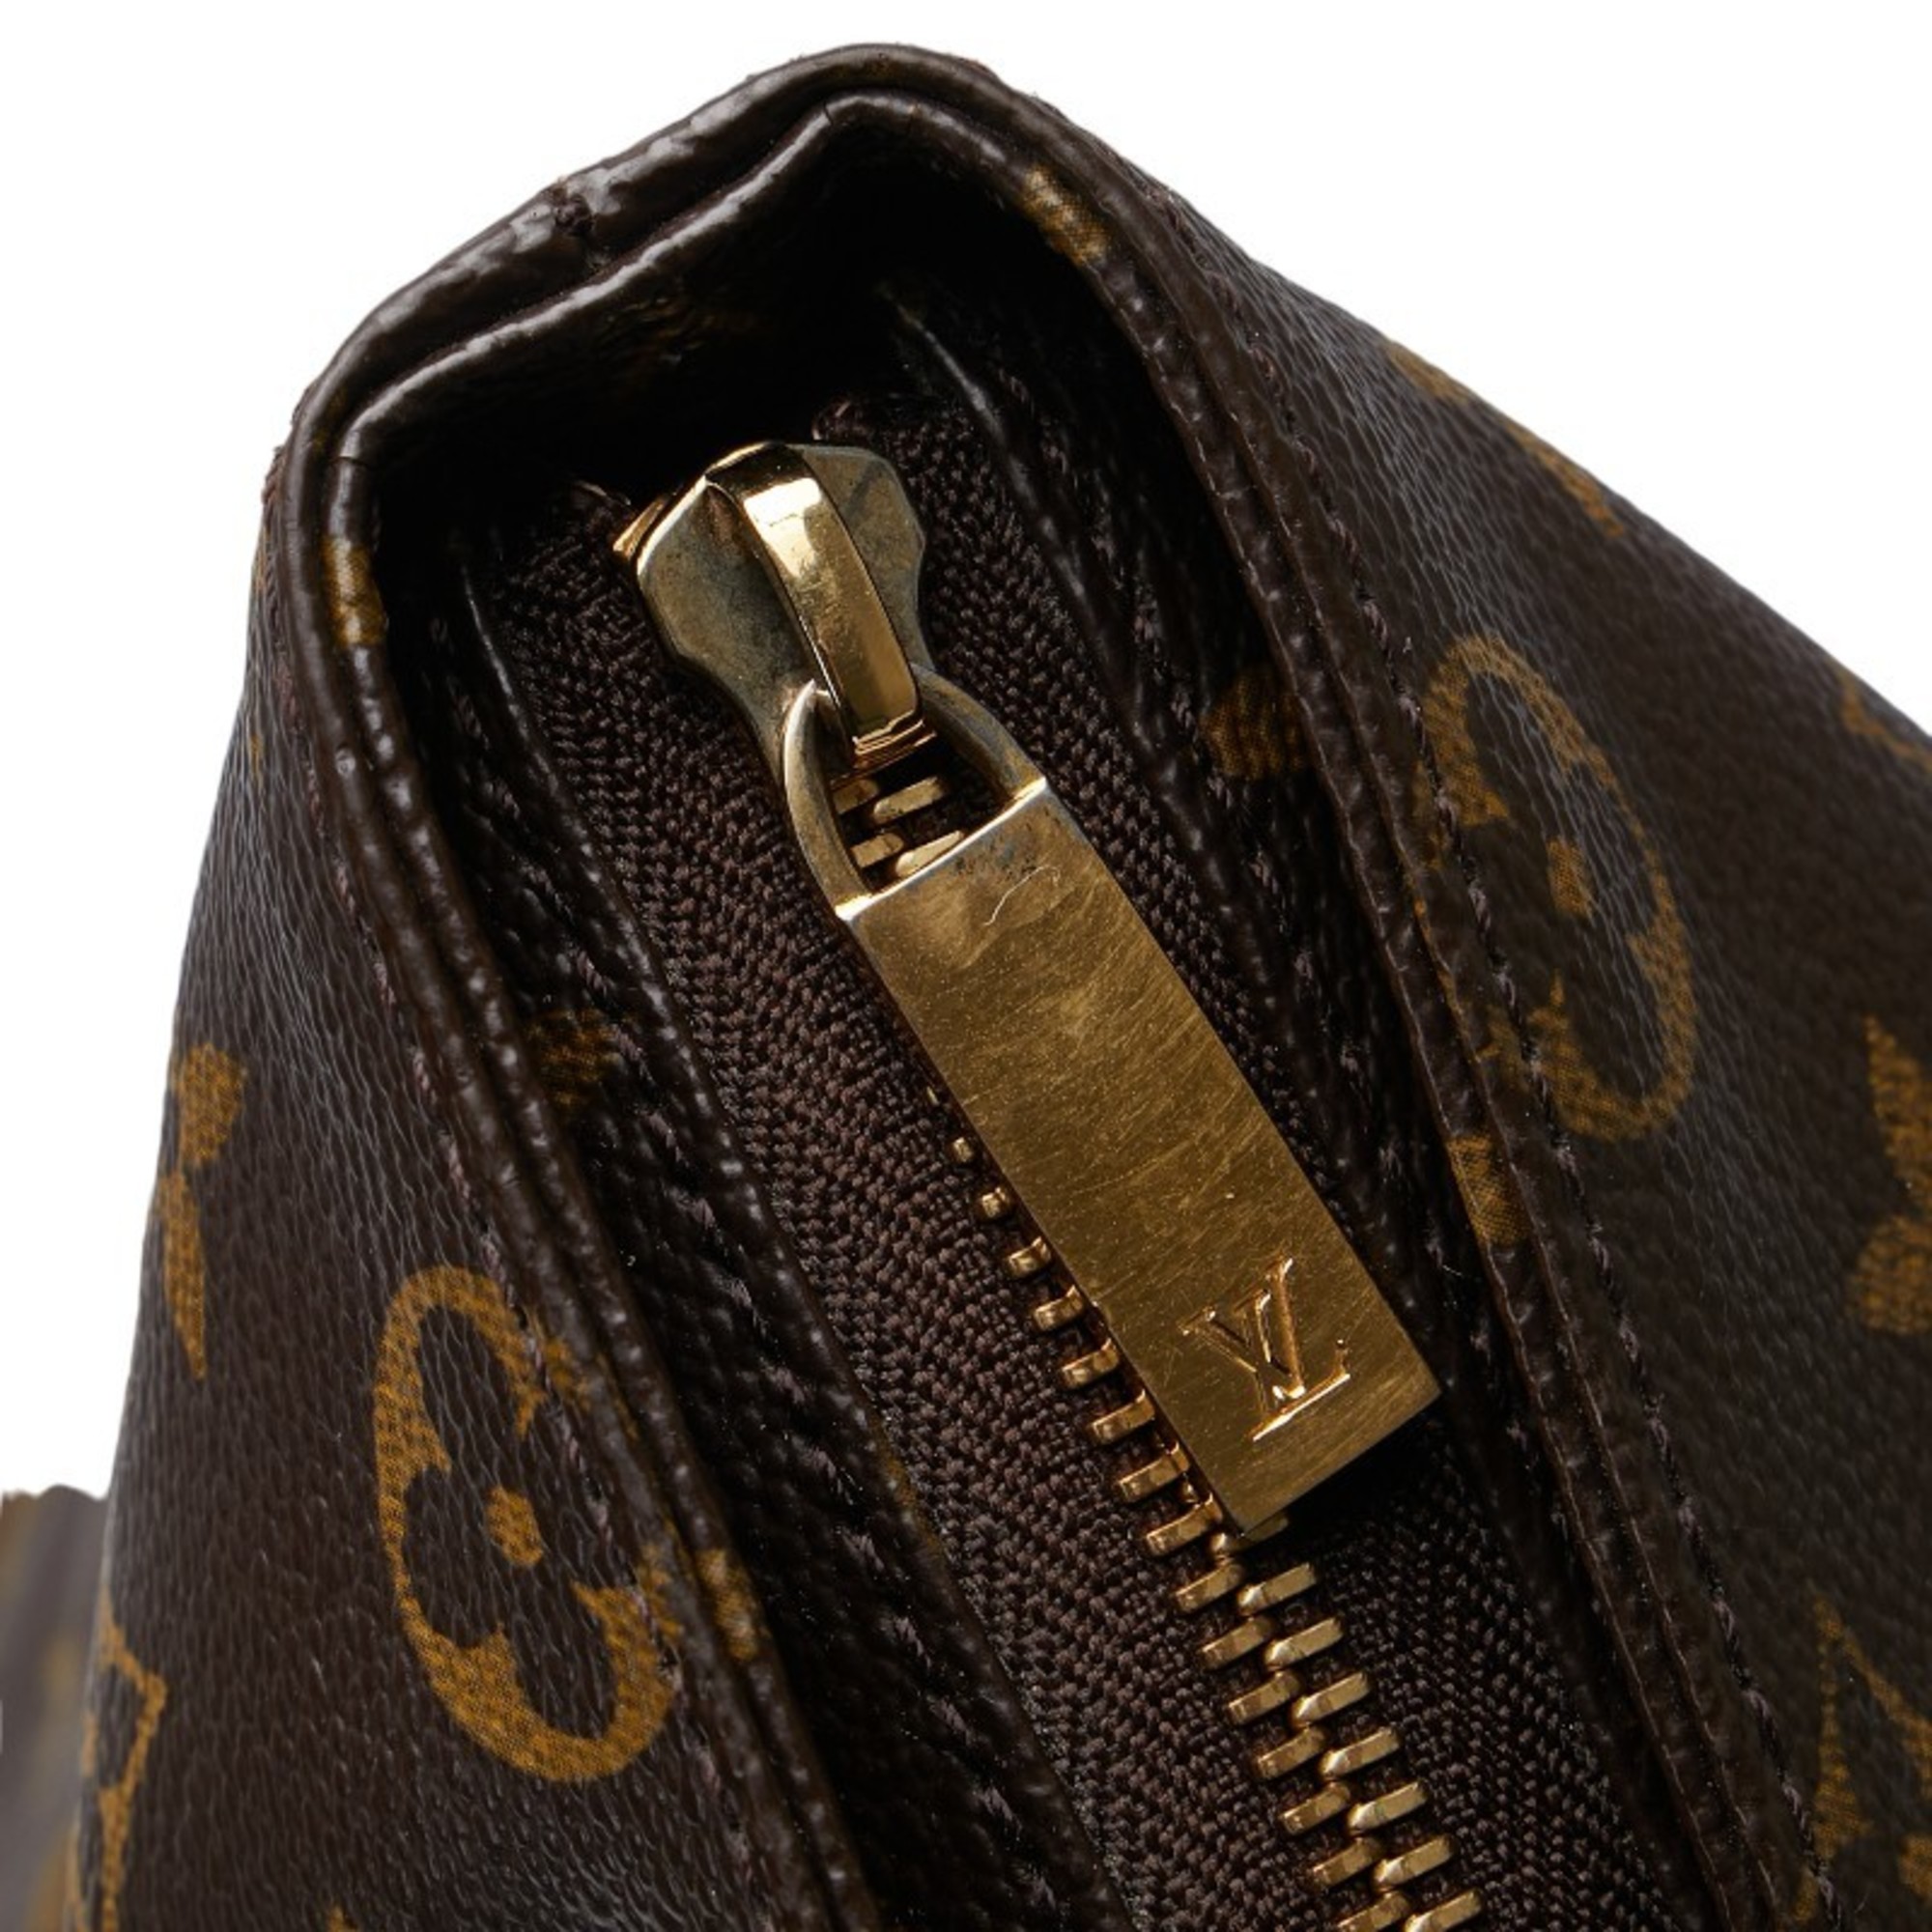 Louis Vuitton Monogram Caba Maison Tote Bag Shoulder M51151 Brown PVC Leather Women's LOUIS VUITTON